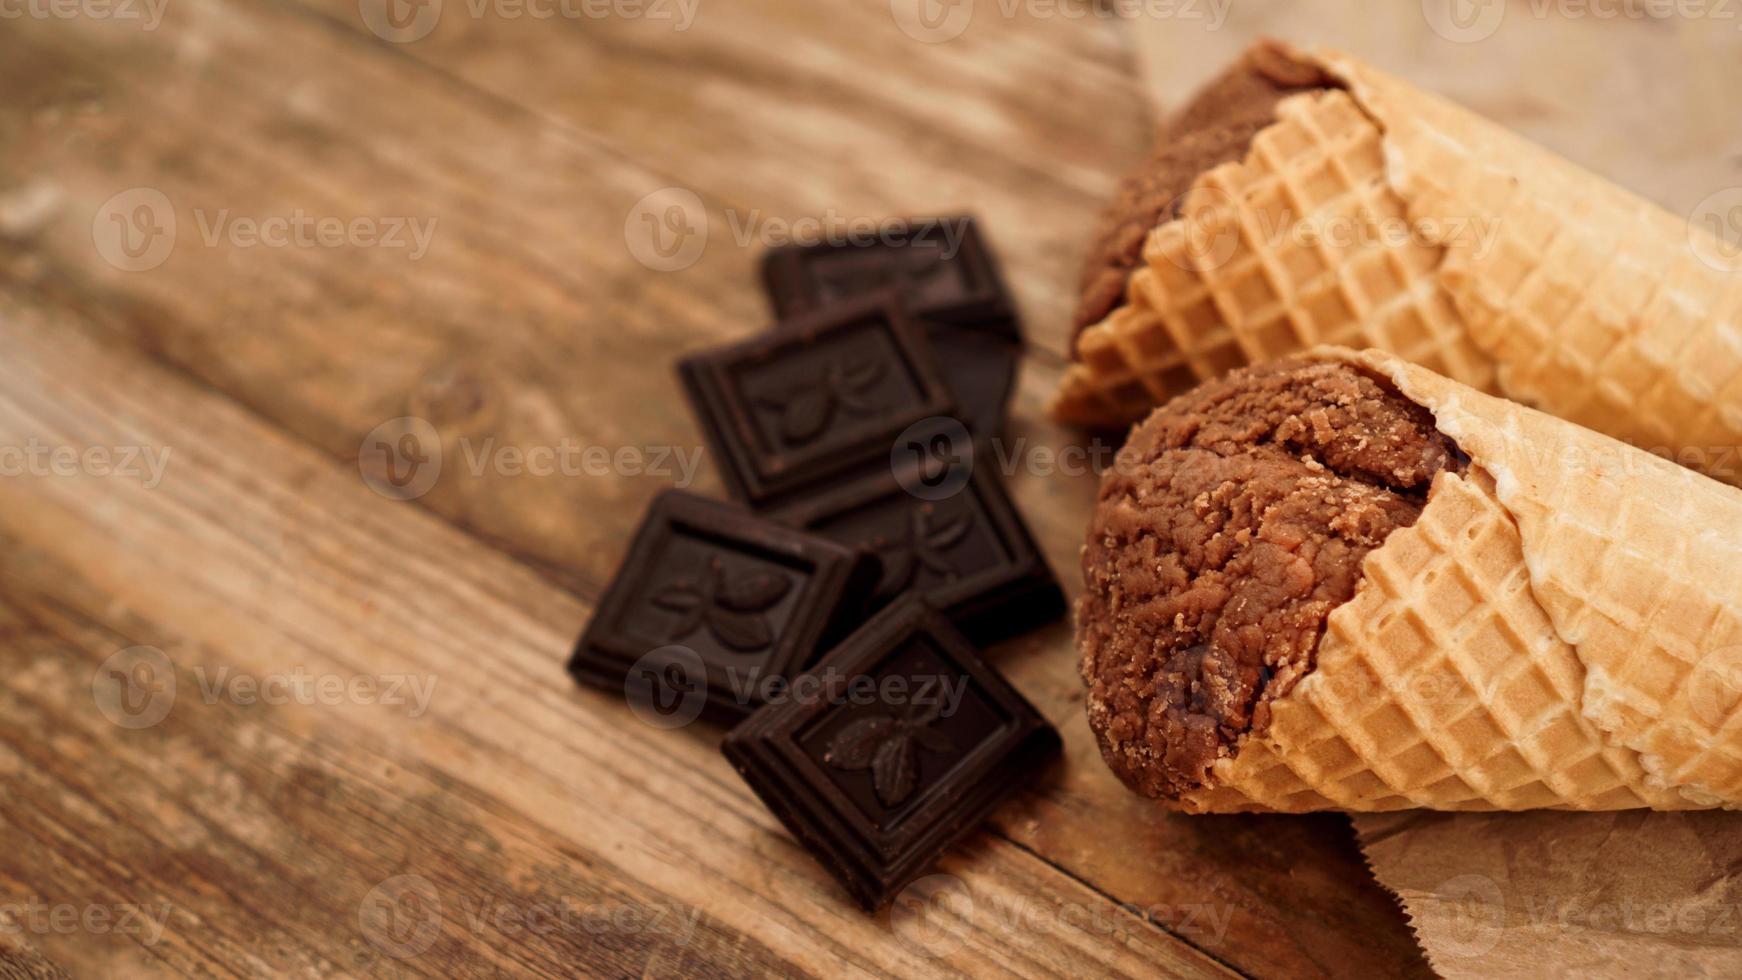 sorvete de chocolate em casquinha de waffle em papel artesanal foto